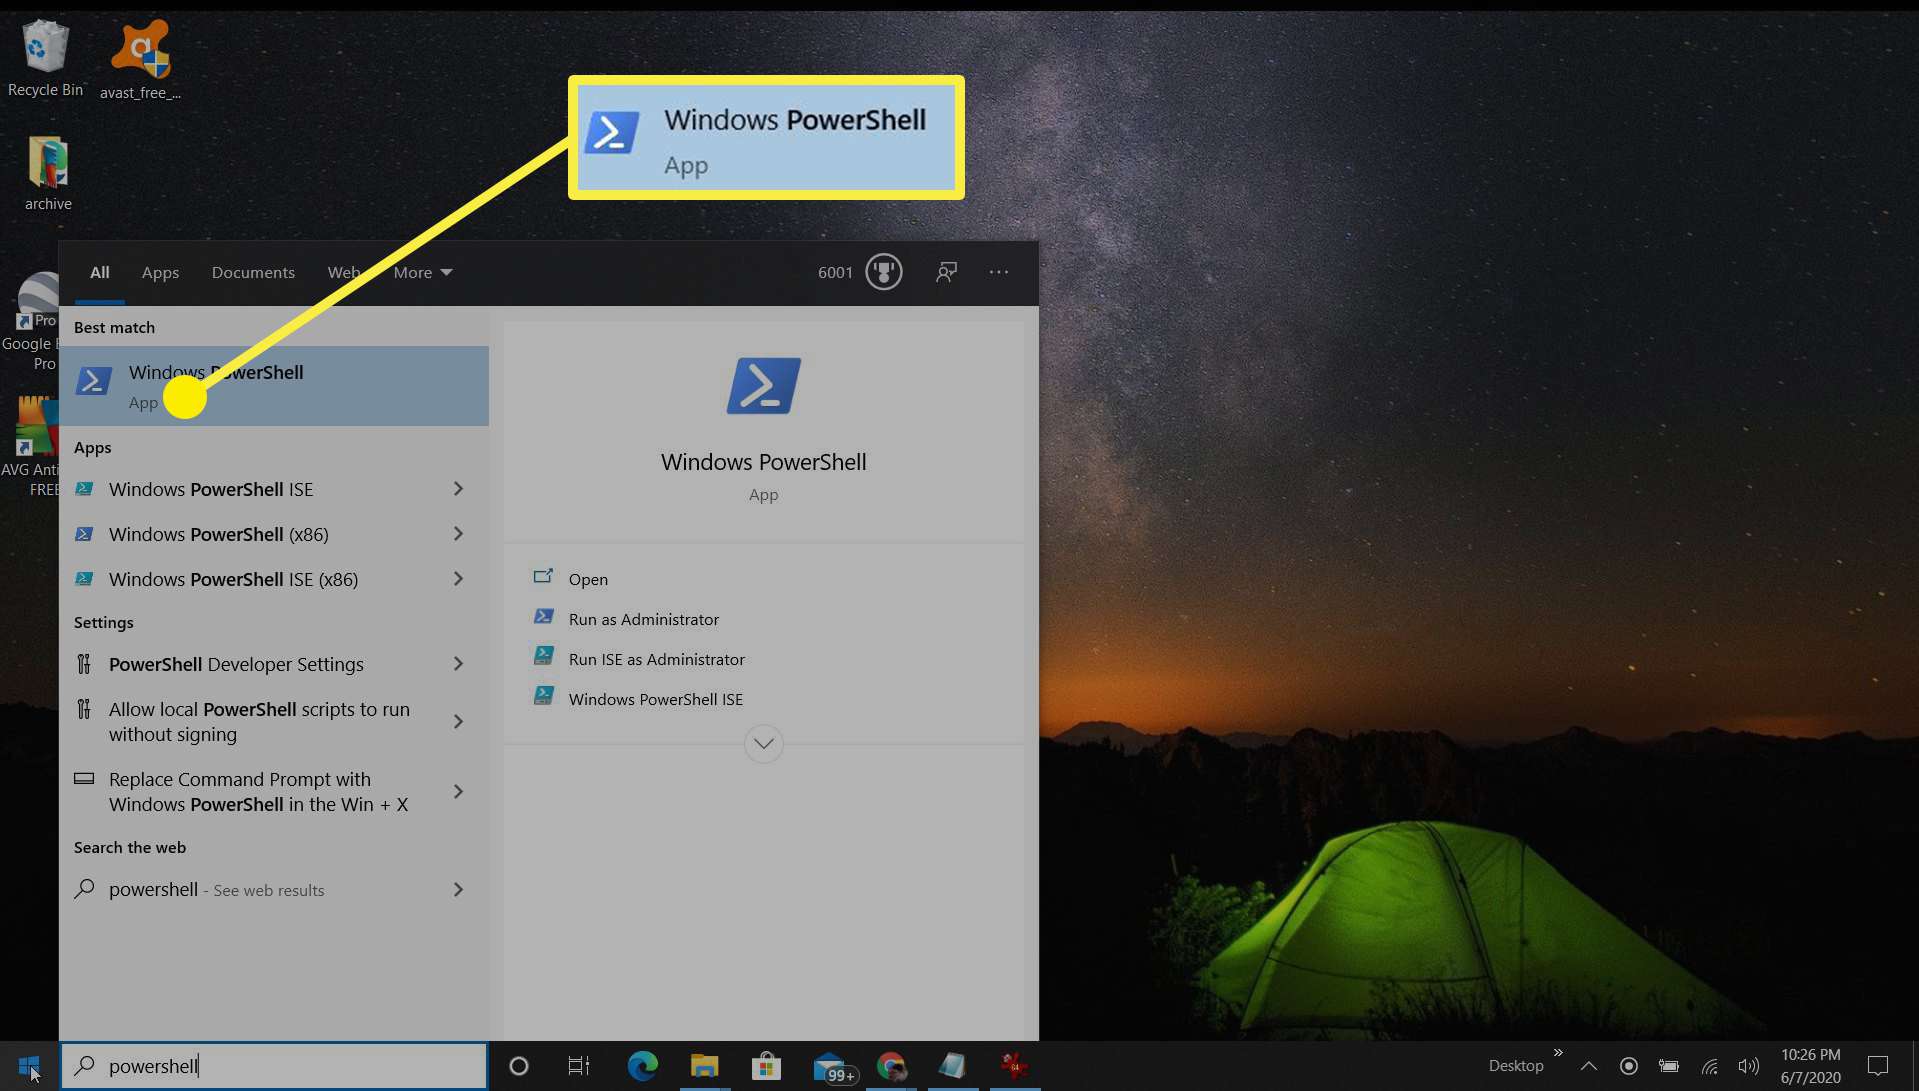 Captura de tela da abertura do PowerShell no Windows 10